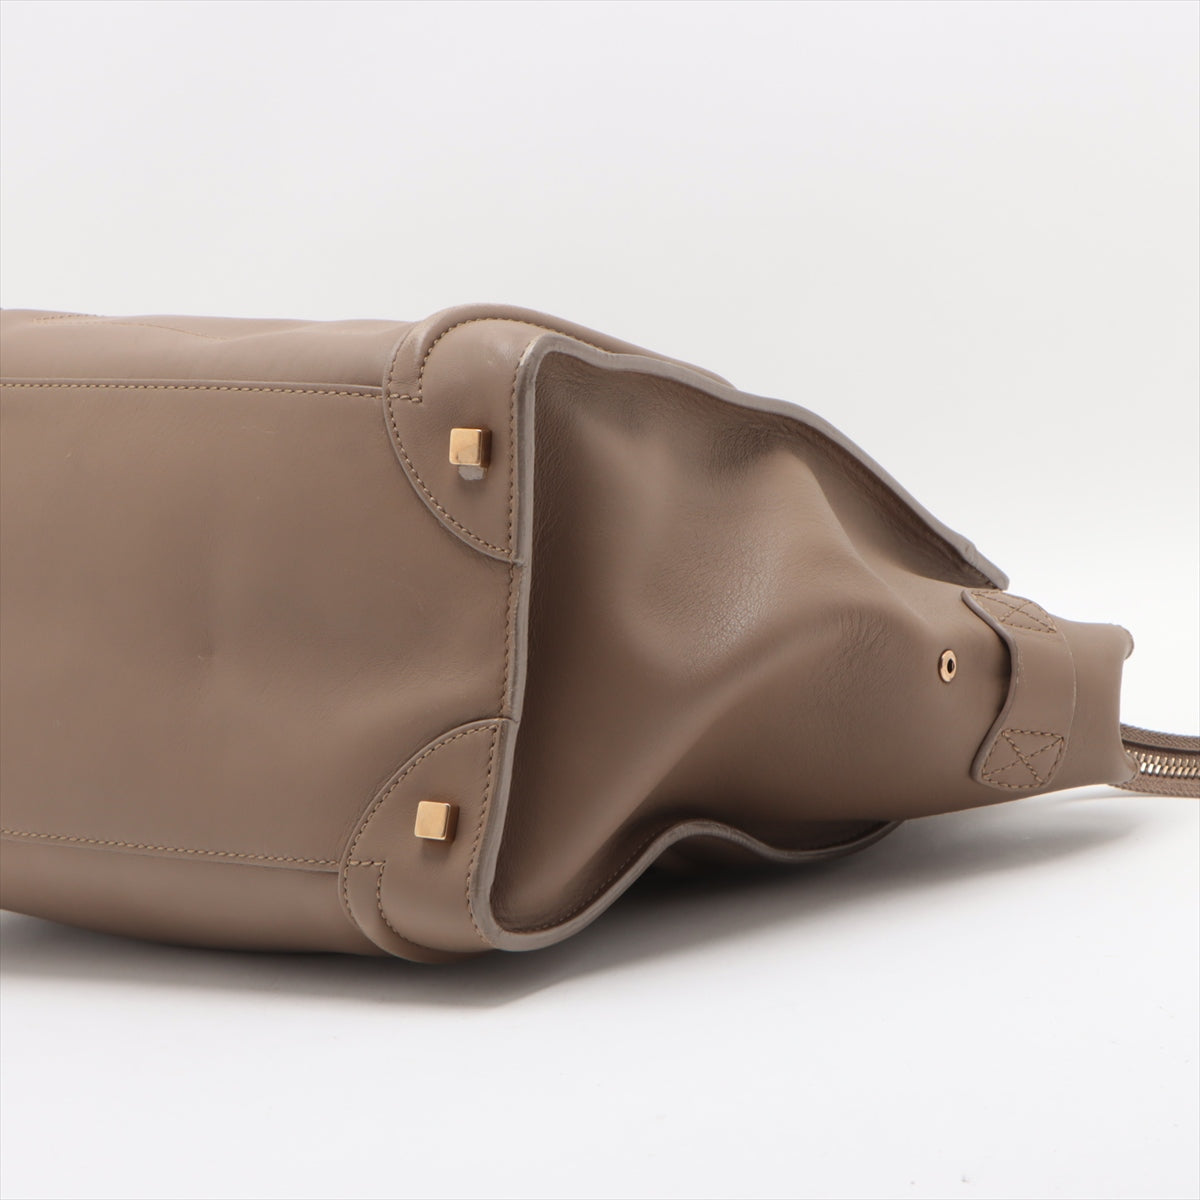 Celine Luggage Mini per Leather Handbag Beige Lagoon